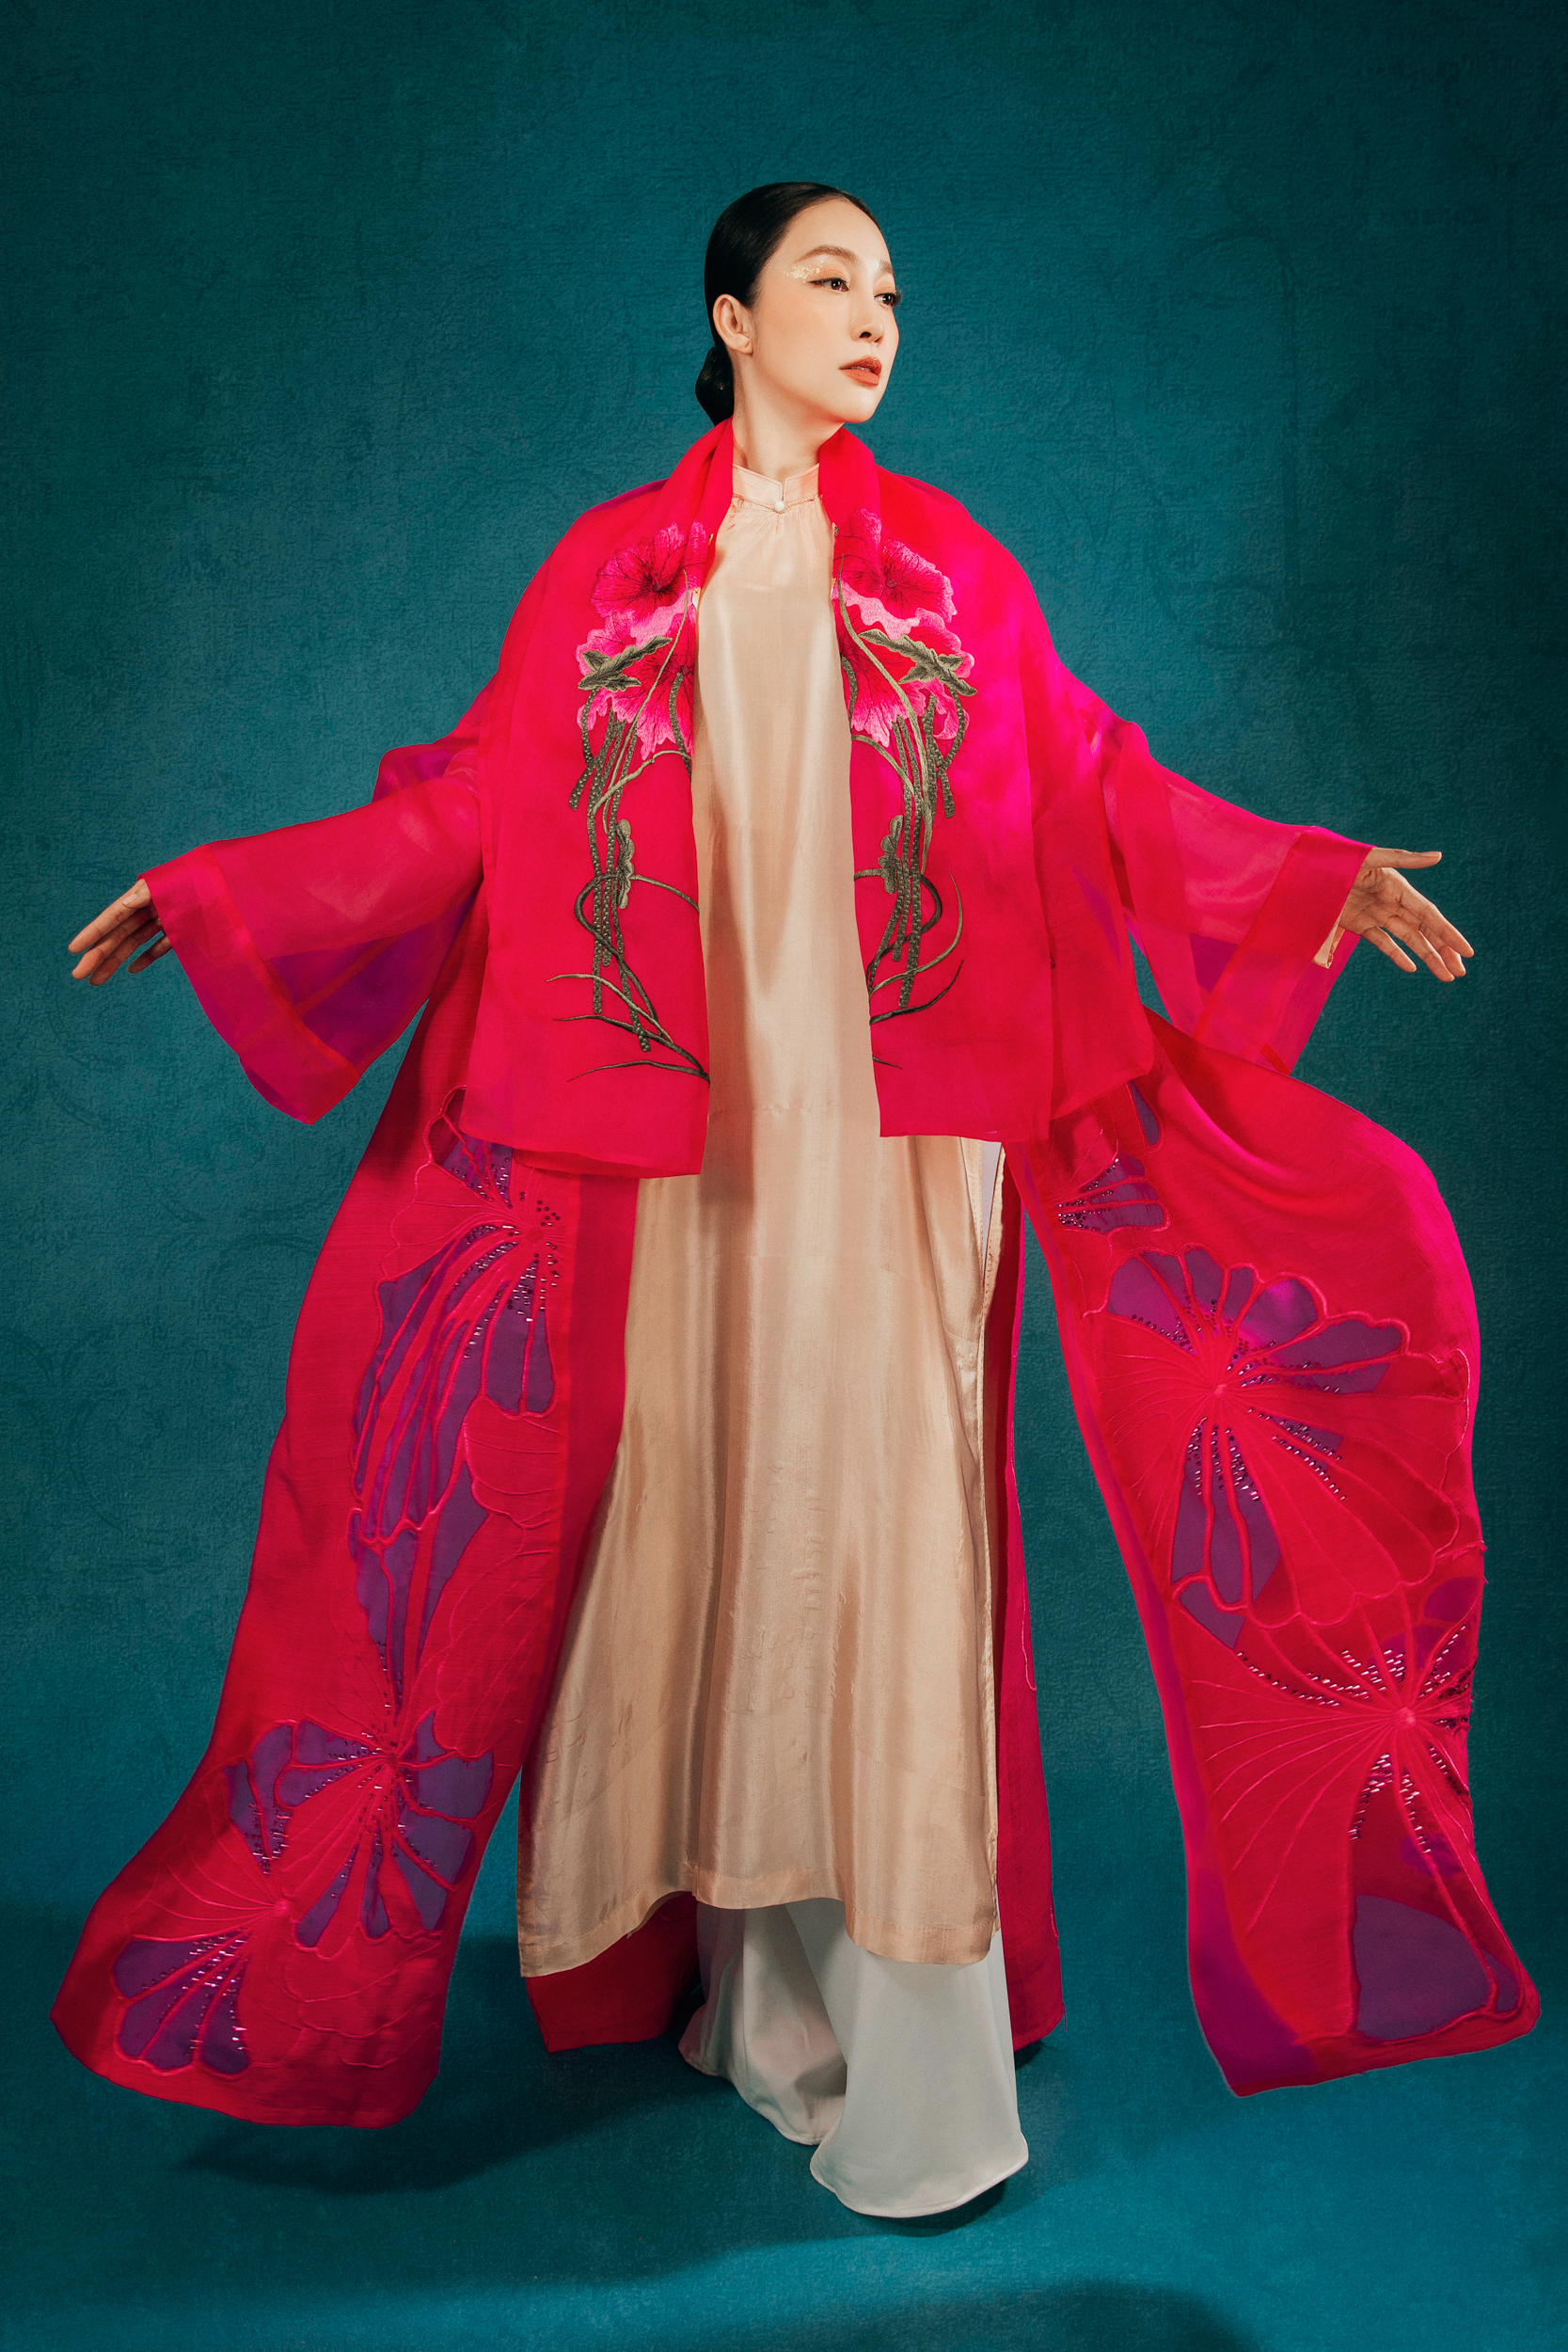 Nét đẹp văn hóa trên trang phục người Dao